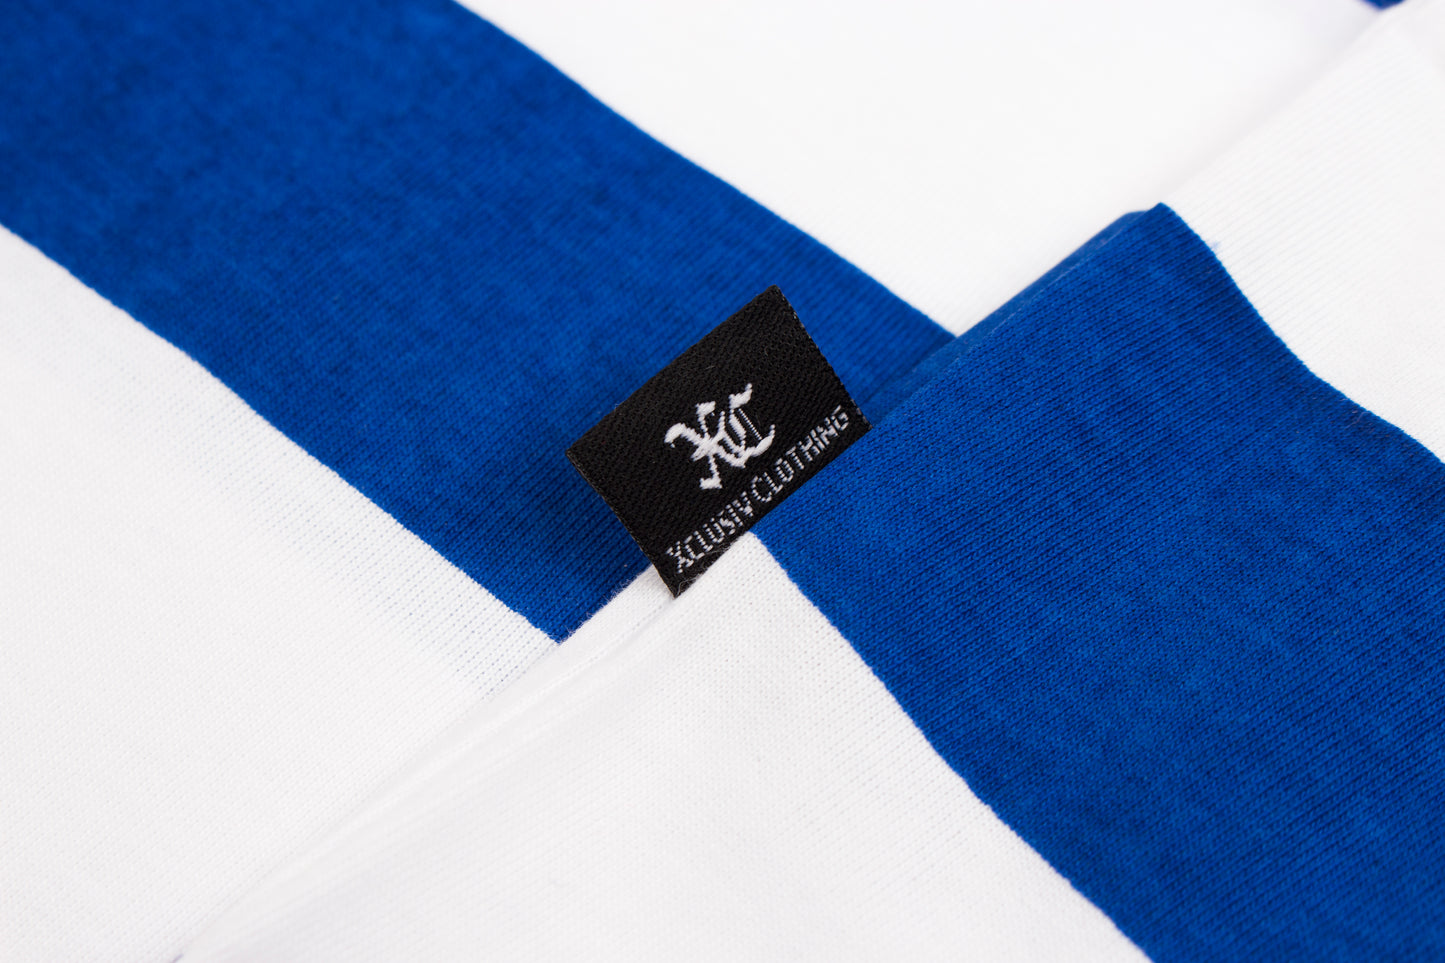 XCLUSIV STRIPED BLUE AND WHITE TSHIRT - Xclusiv Clothing Company